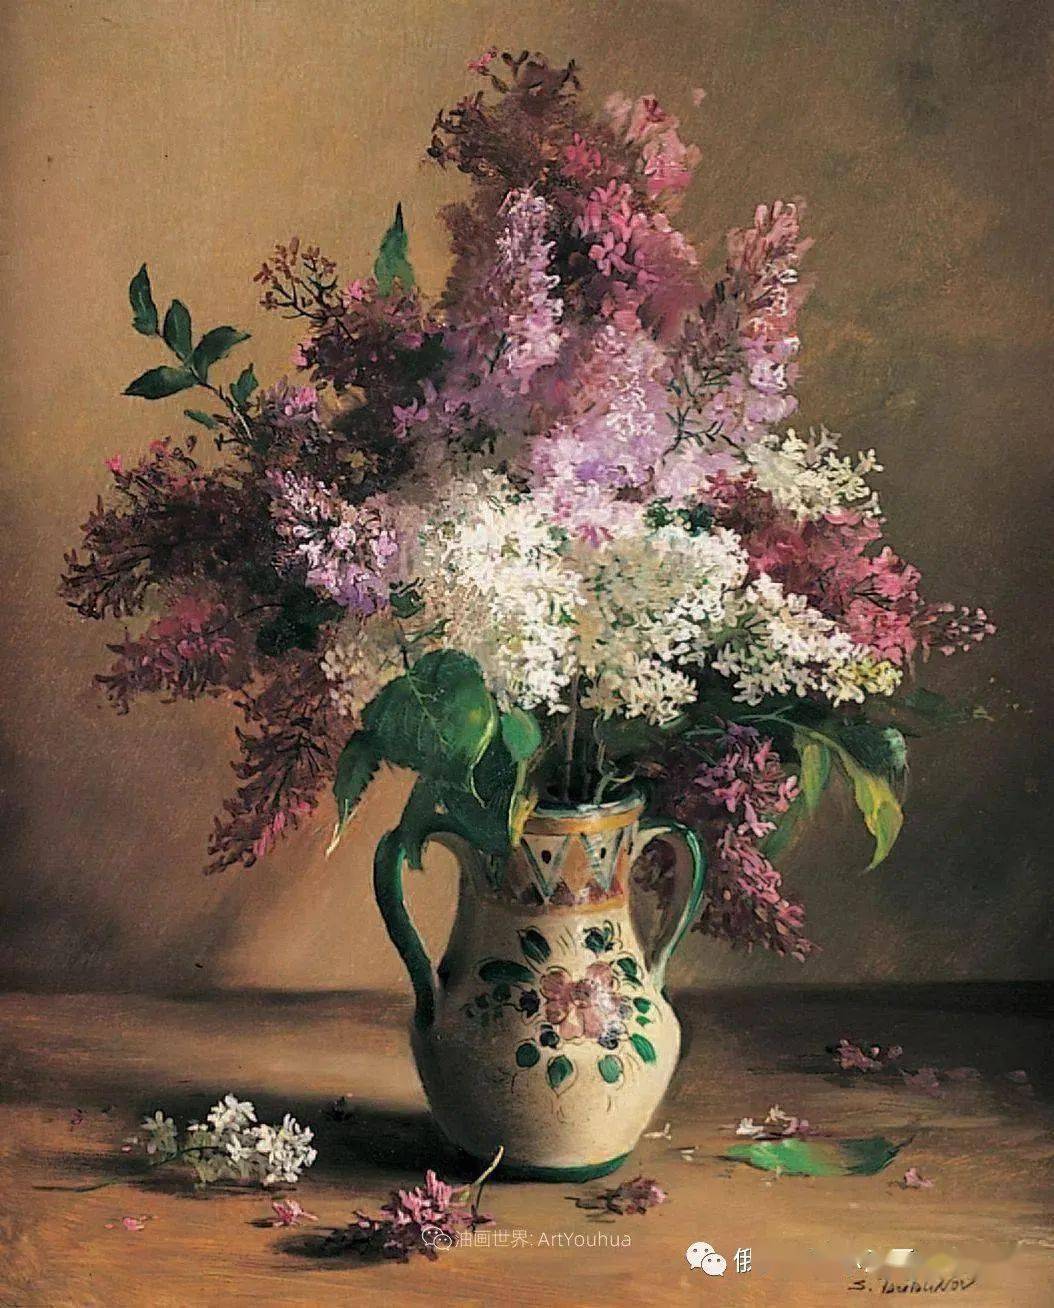 俄罗斯画家谢尔盖图图诺夫花卉静物油画作品欣赏